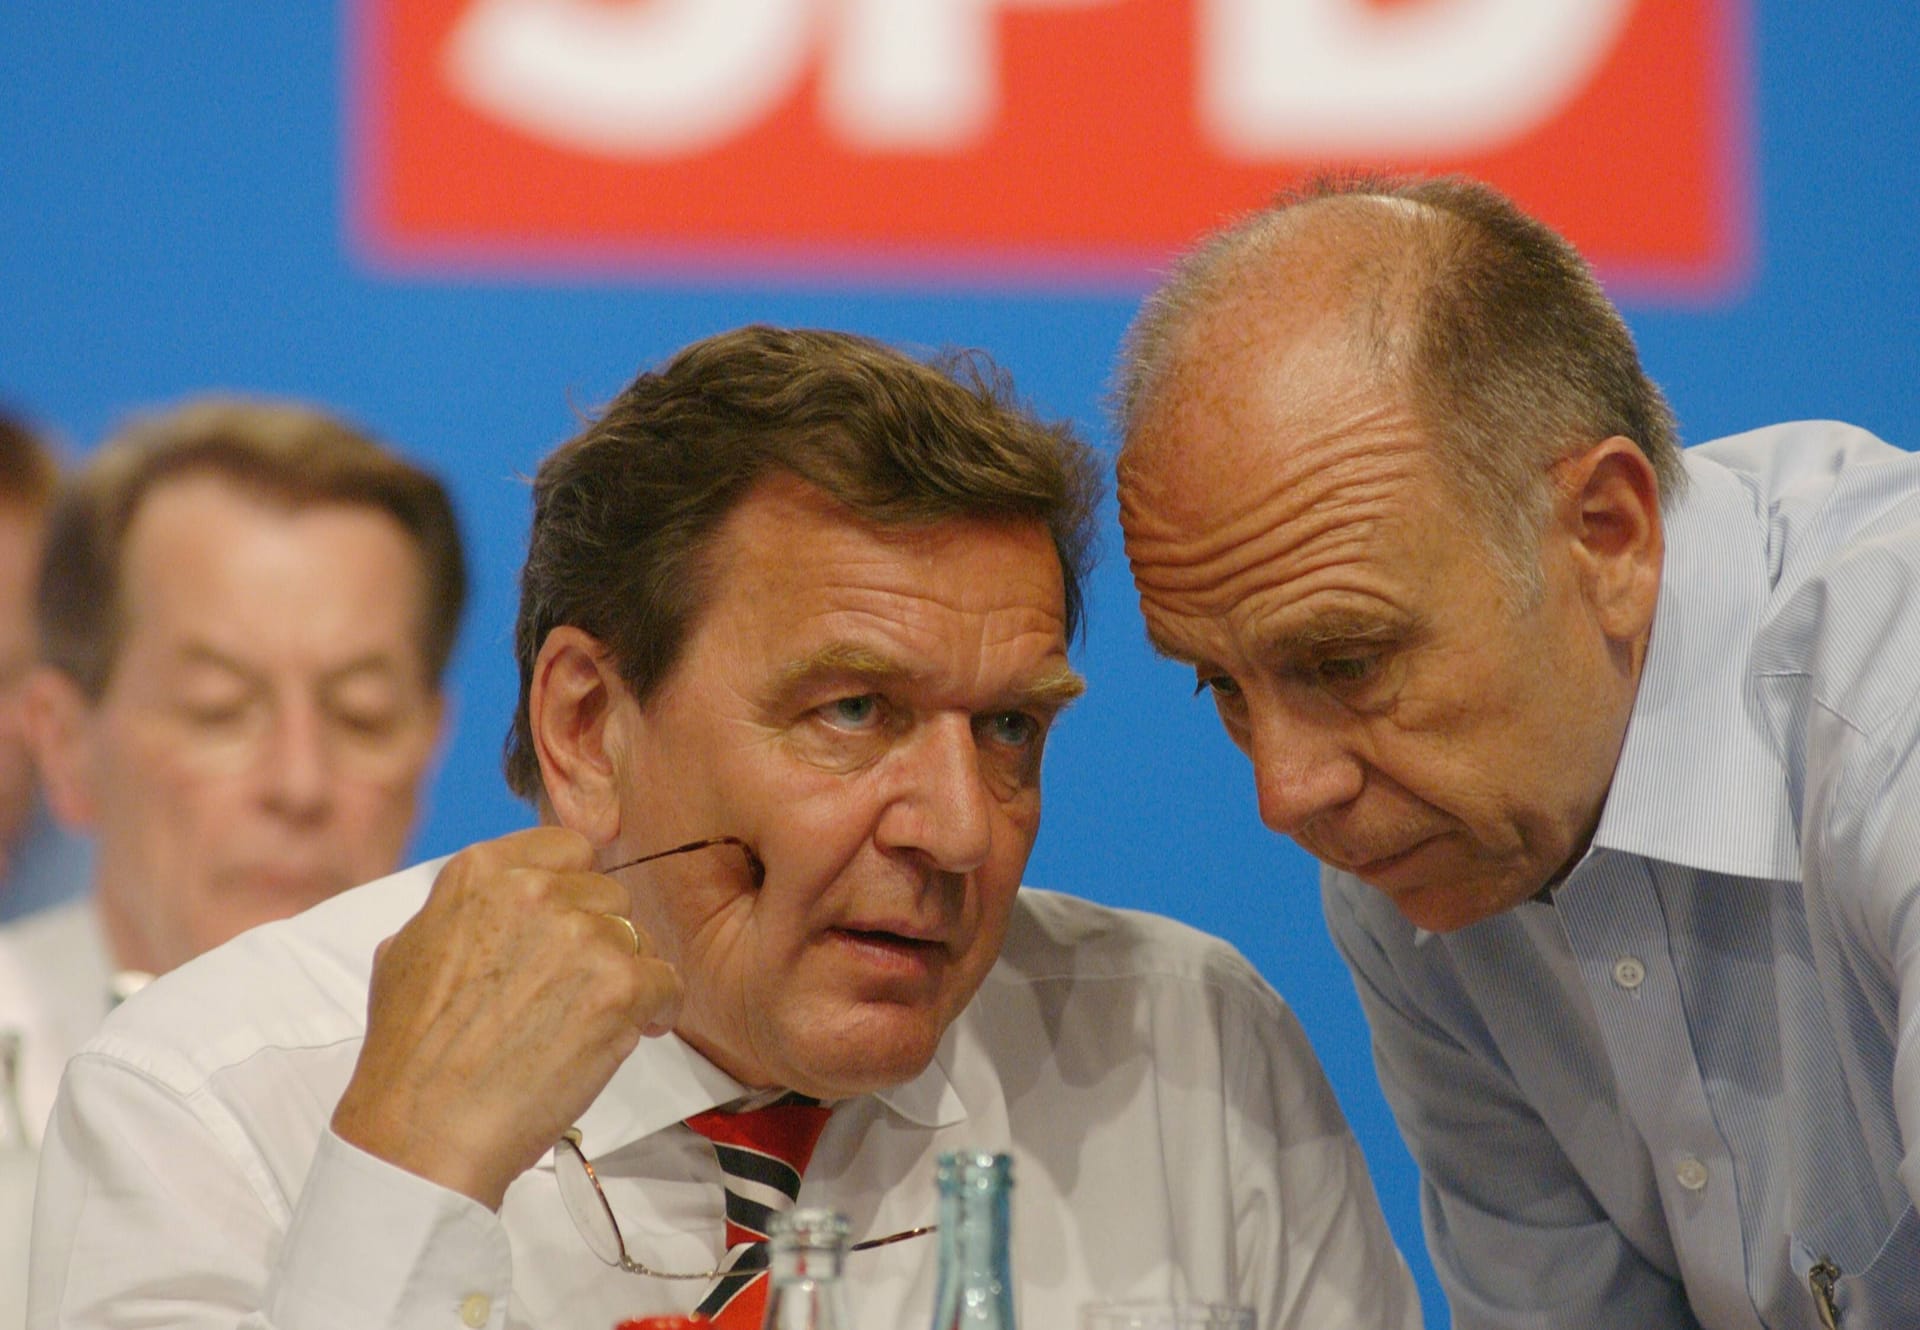 Walter Riester (r.) war von 1998 bis 2002 Bundesminister für Arbeit und Sozialordnung unter Bundeskanzler Gerhard Schröder.